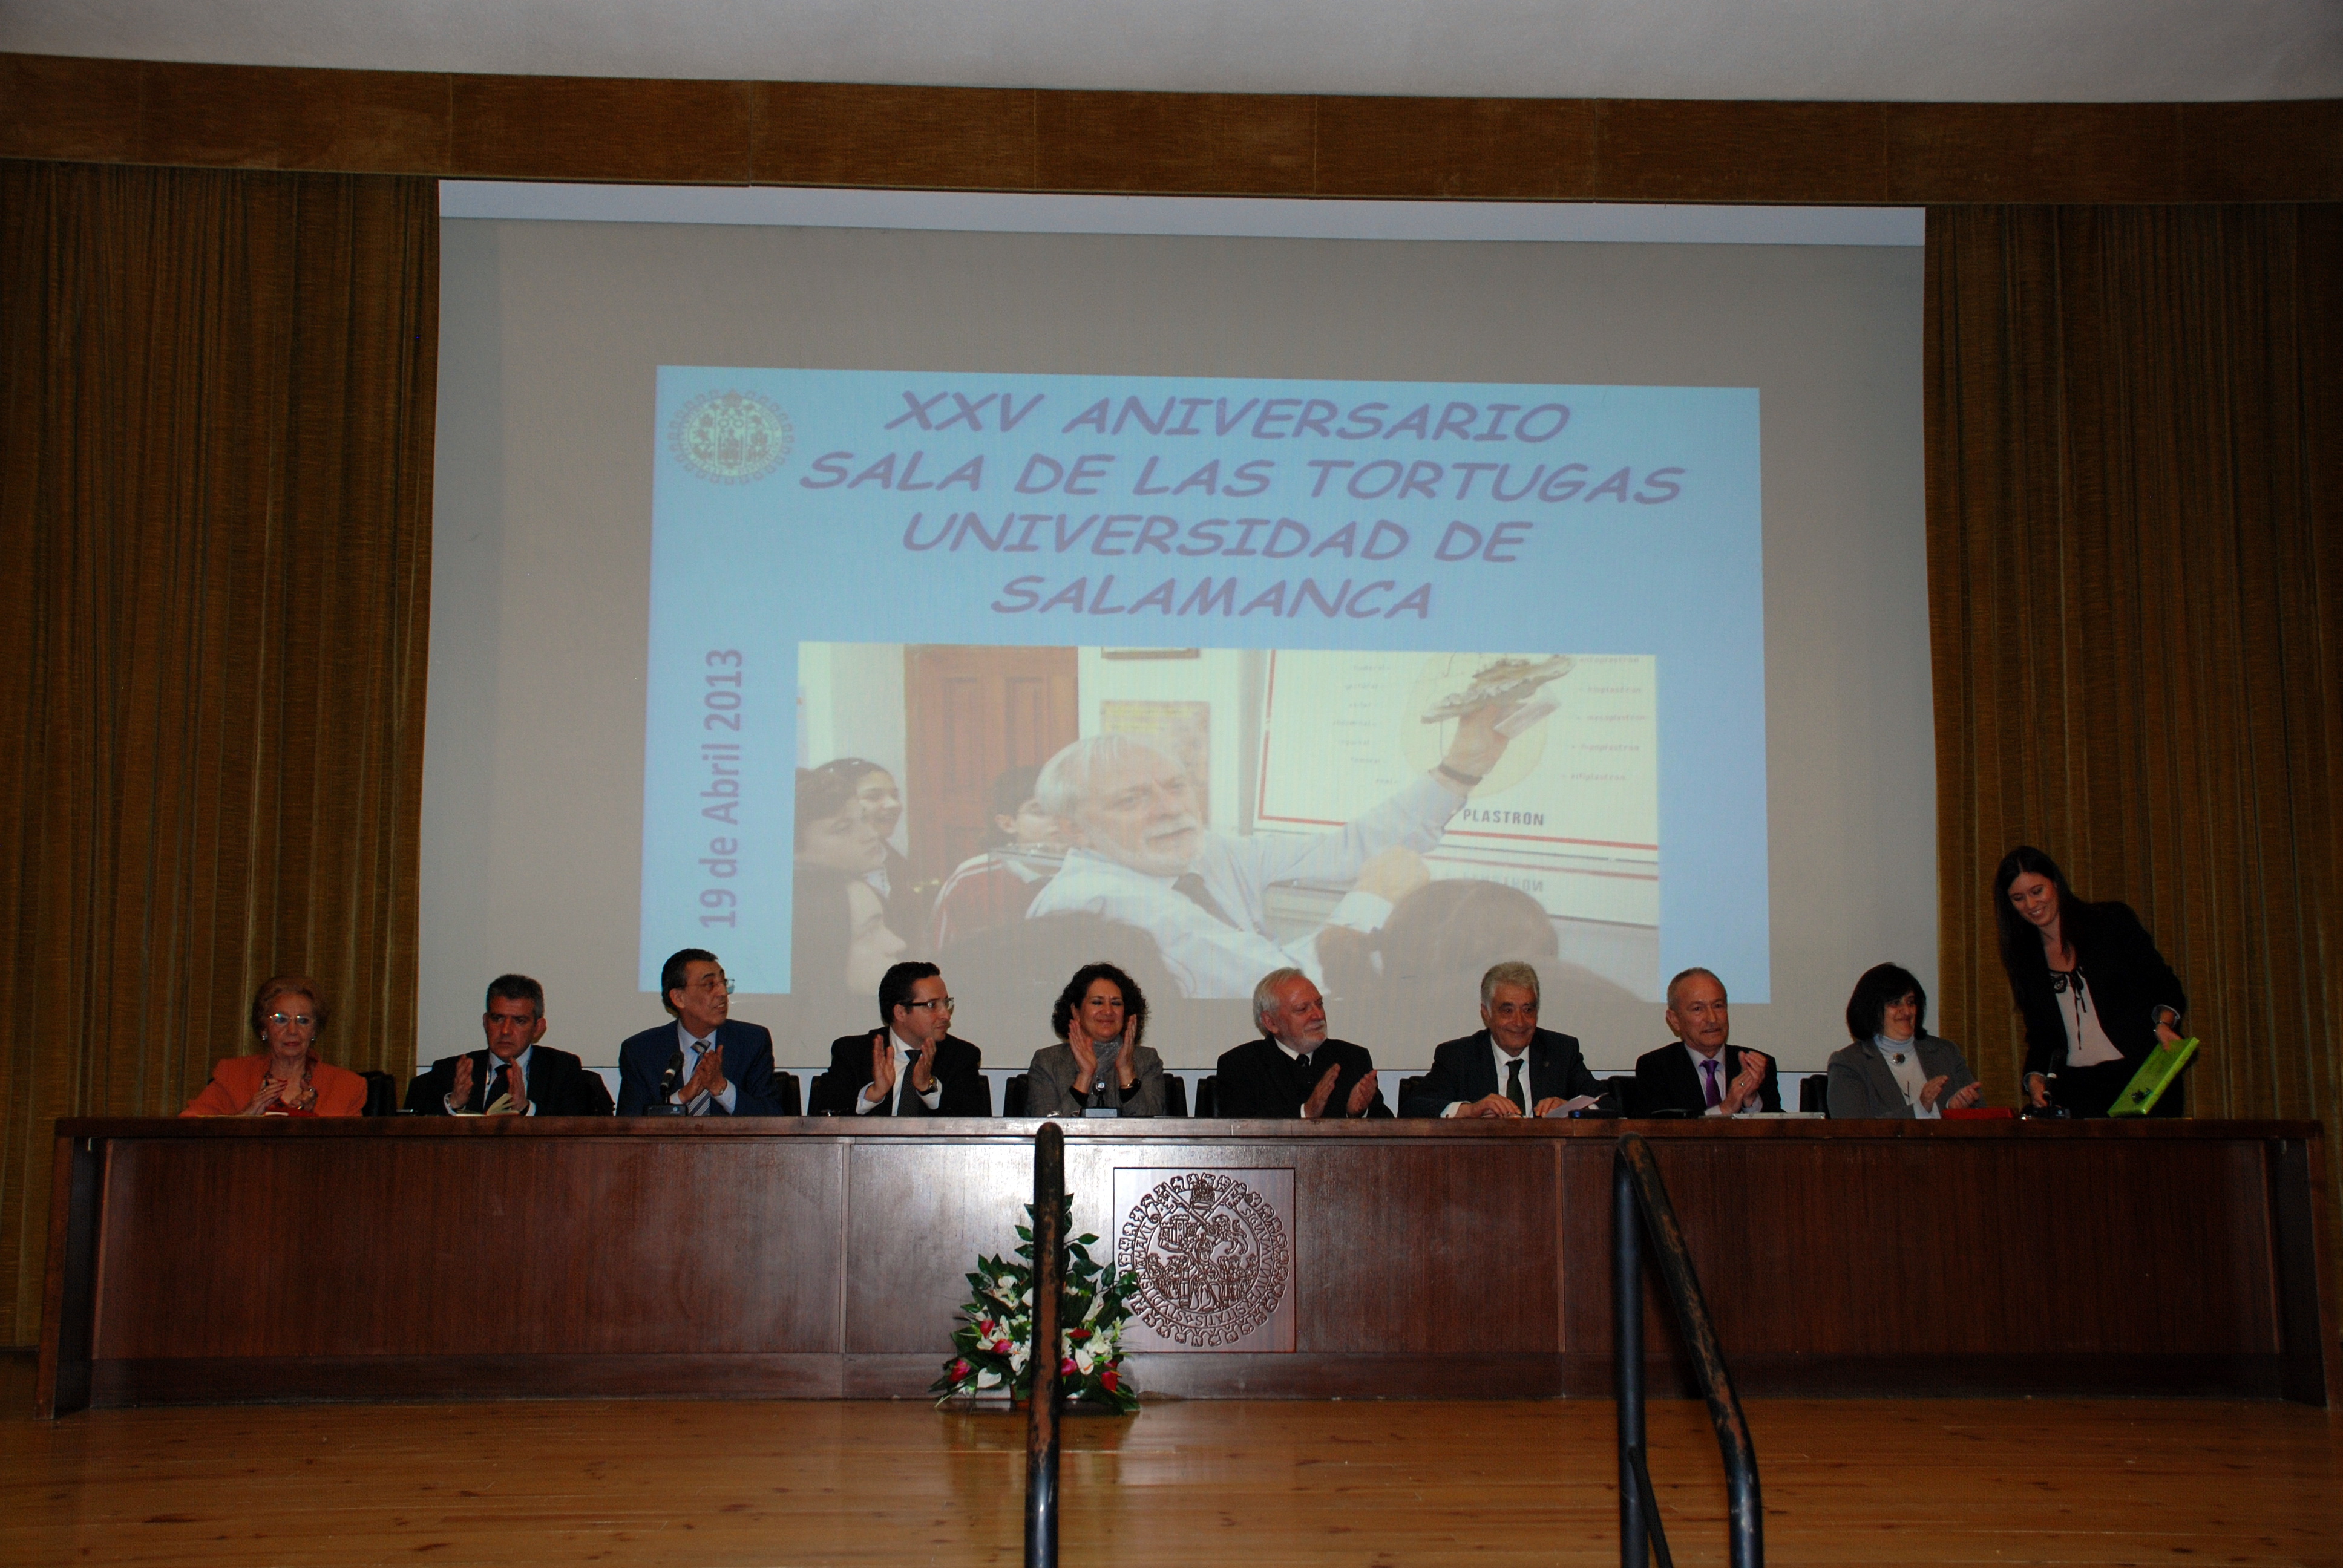 La Facultad de Ciencias de la Universidad de Salamanca acoge un acto oficial en conmemoración del XXV aniversario de la ‘Sala de las Tortugas’ y su fundador, Emiliano Jiménez